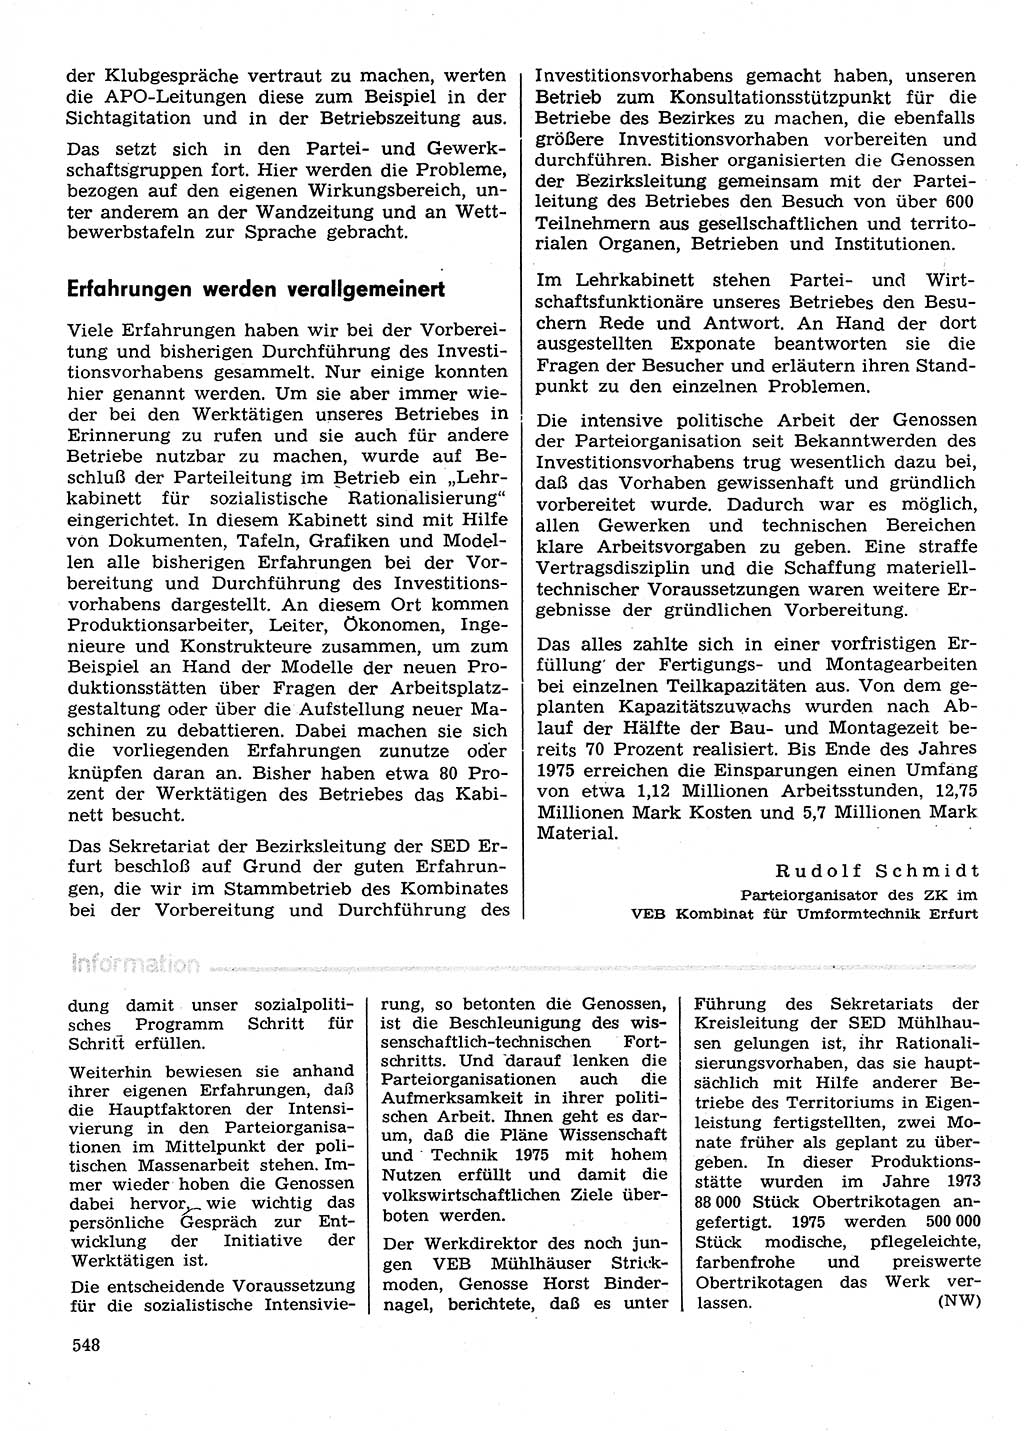 Neuer Weg (NW), Organ des Zentralkomitees (ZK) der SED (Sozialistische Einheitspartei Deutschlands) für Fragen des Parteilebens, 30. Jahrgang [Deutsche Demokratische Republik (DDR)] 1975, Seite 548 (NW ZK SED DDR 1975, S. 548)